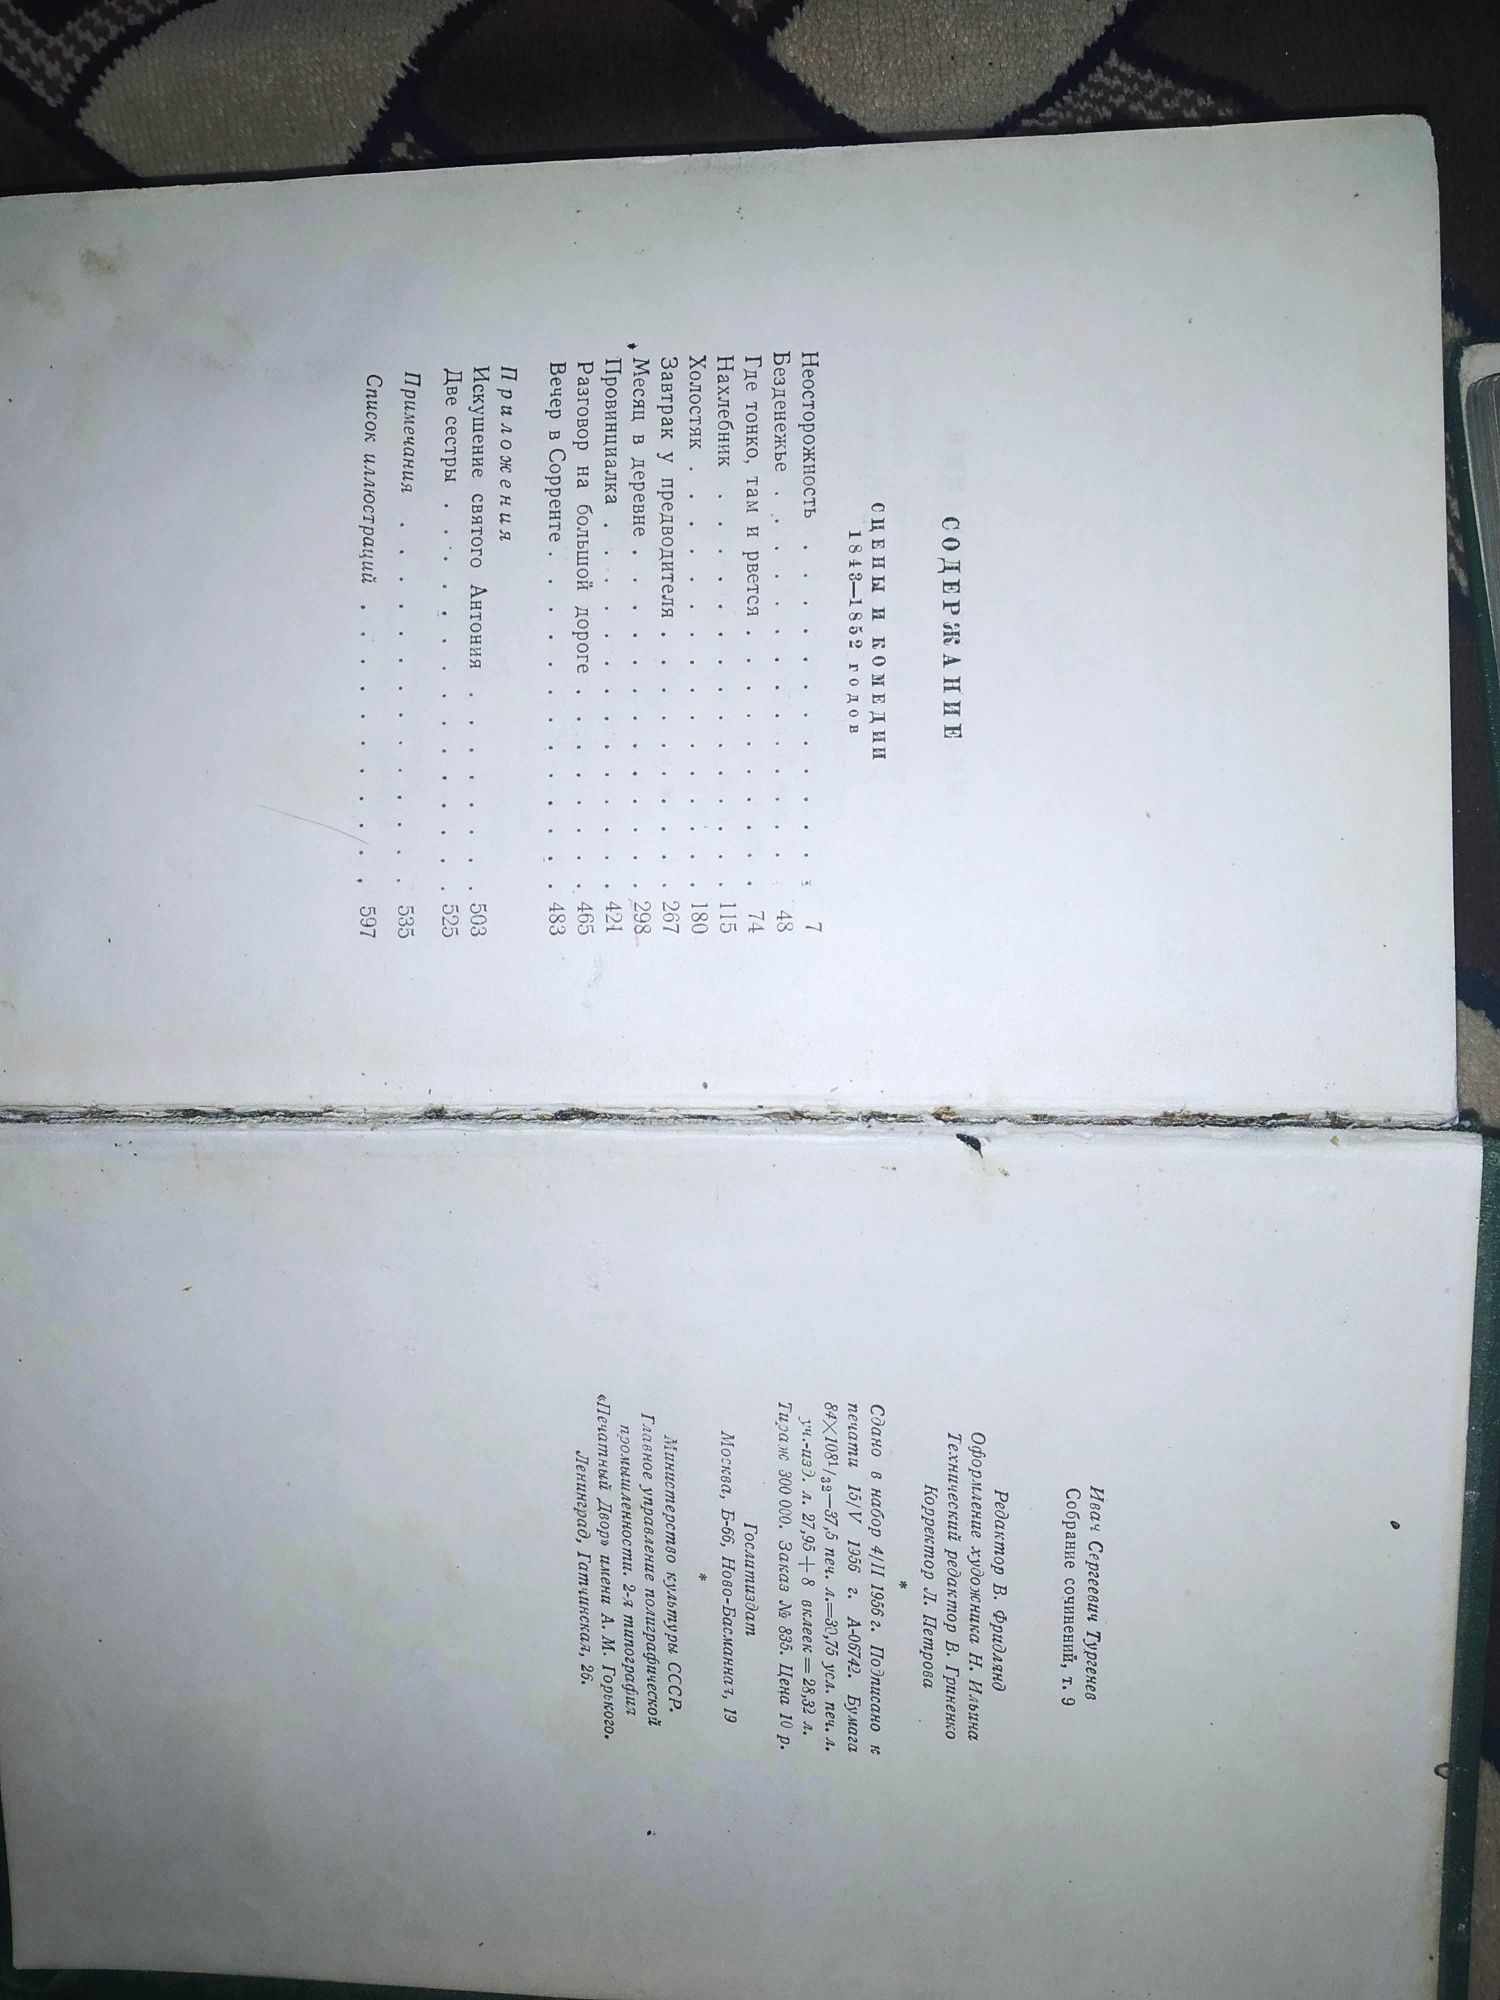 И. С. Тургенев в 12 томах, 1956 г

Состояние: Нормальное
Год: 1956
Тир